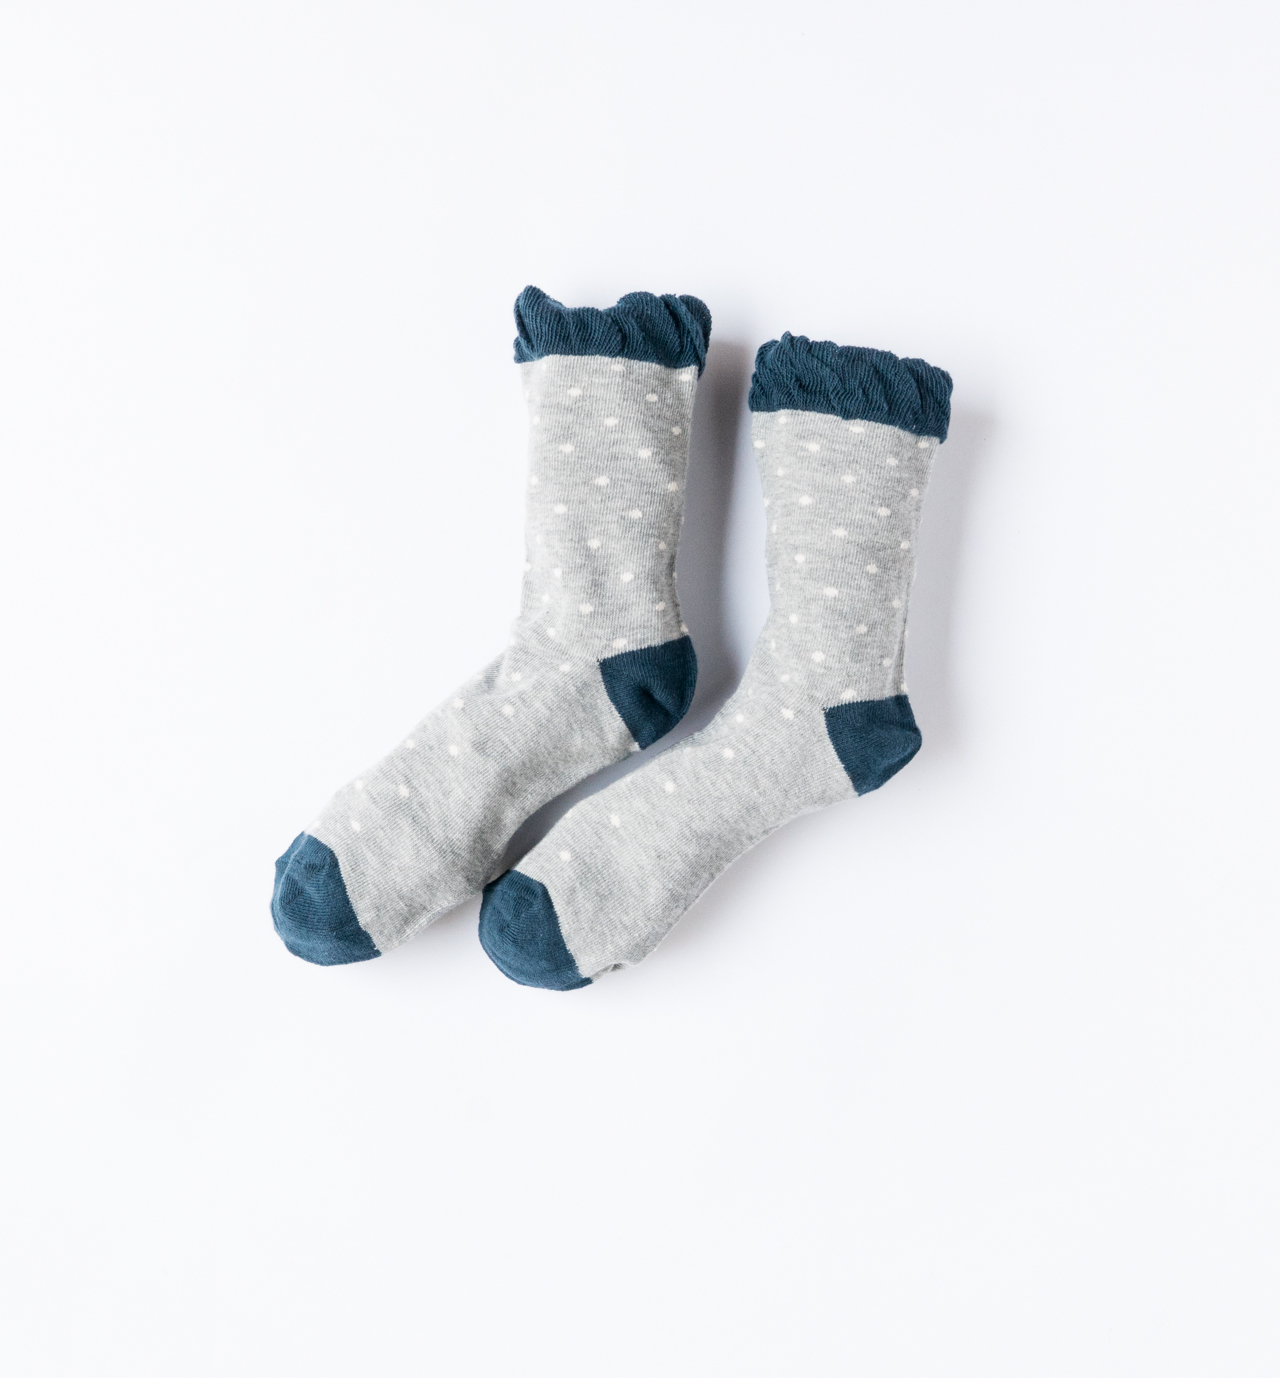 socks-dotdot-1.jpg